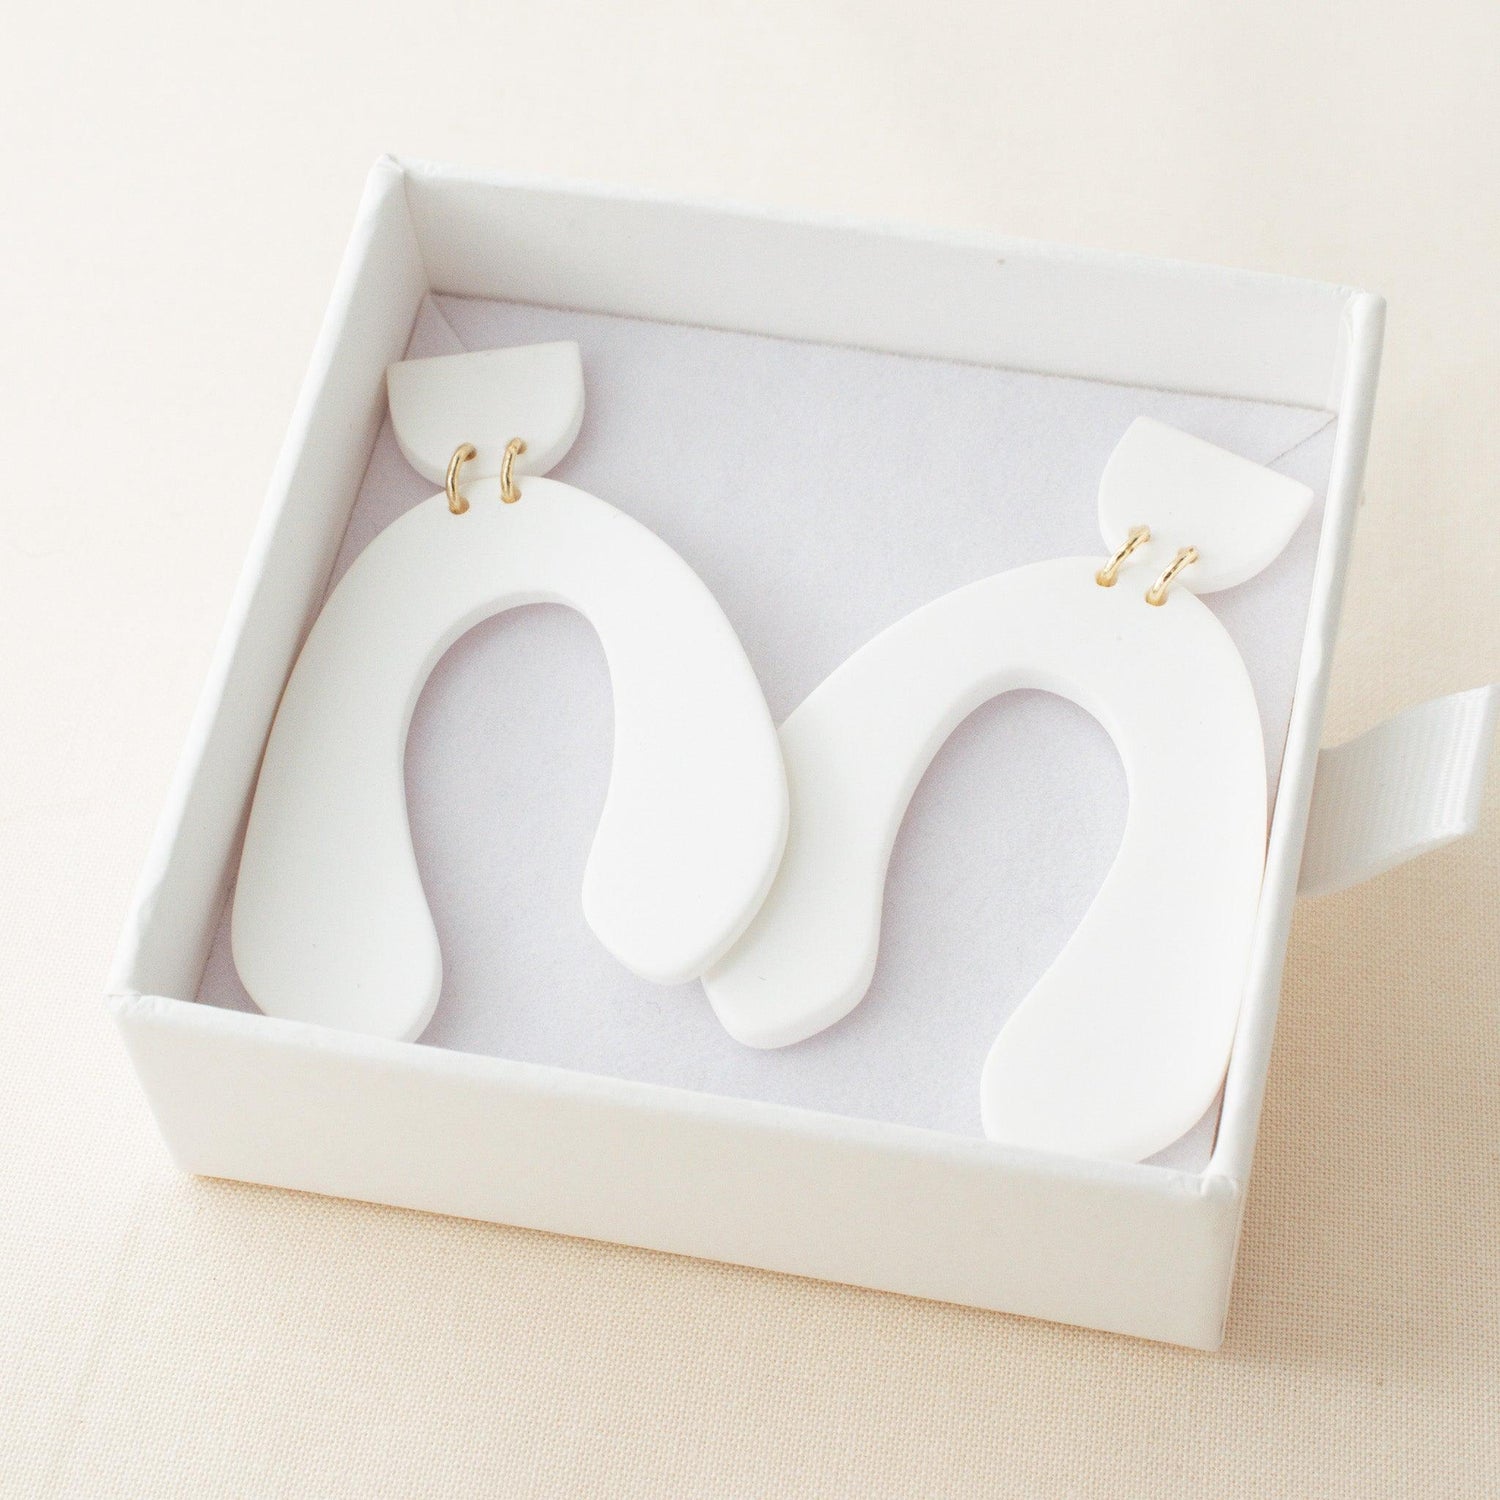 Chic Polymer Clay White Hoop Earrings - avantejewel.com